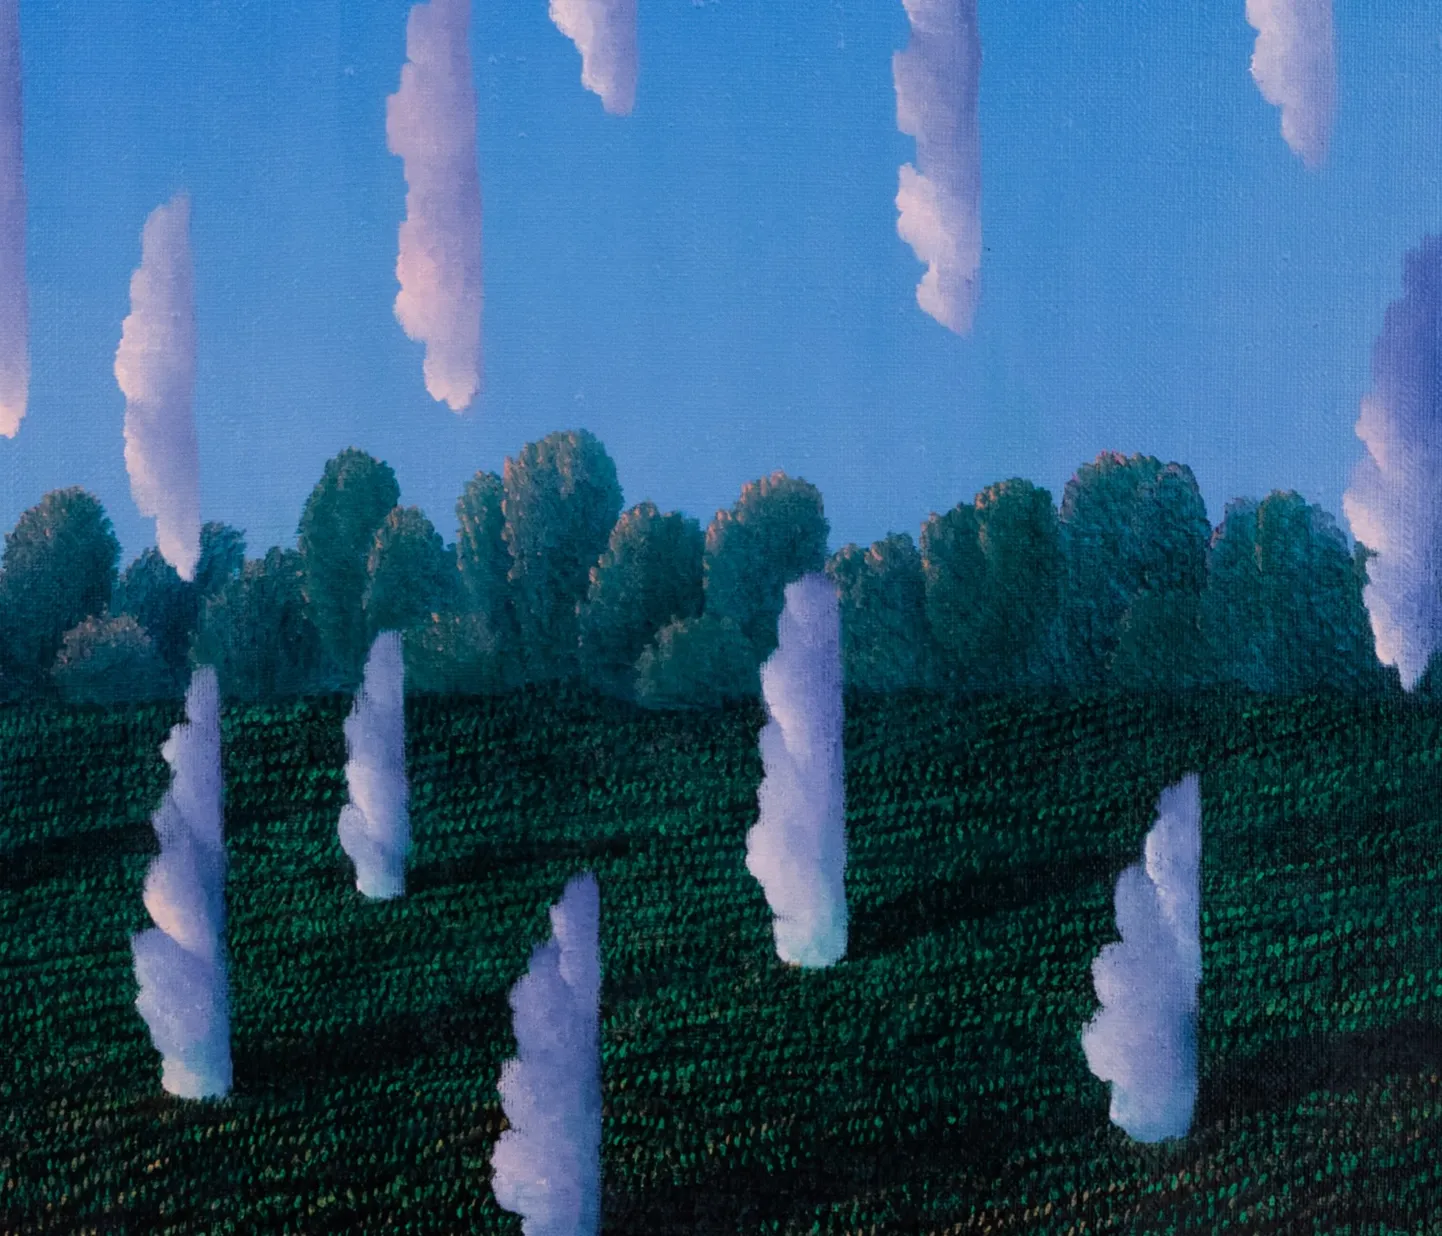 Toomas Vint
Kasvavad maa seest taevasse. 1997
Õli, lõuend. 74 x 70 cm (raamitud)